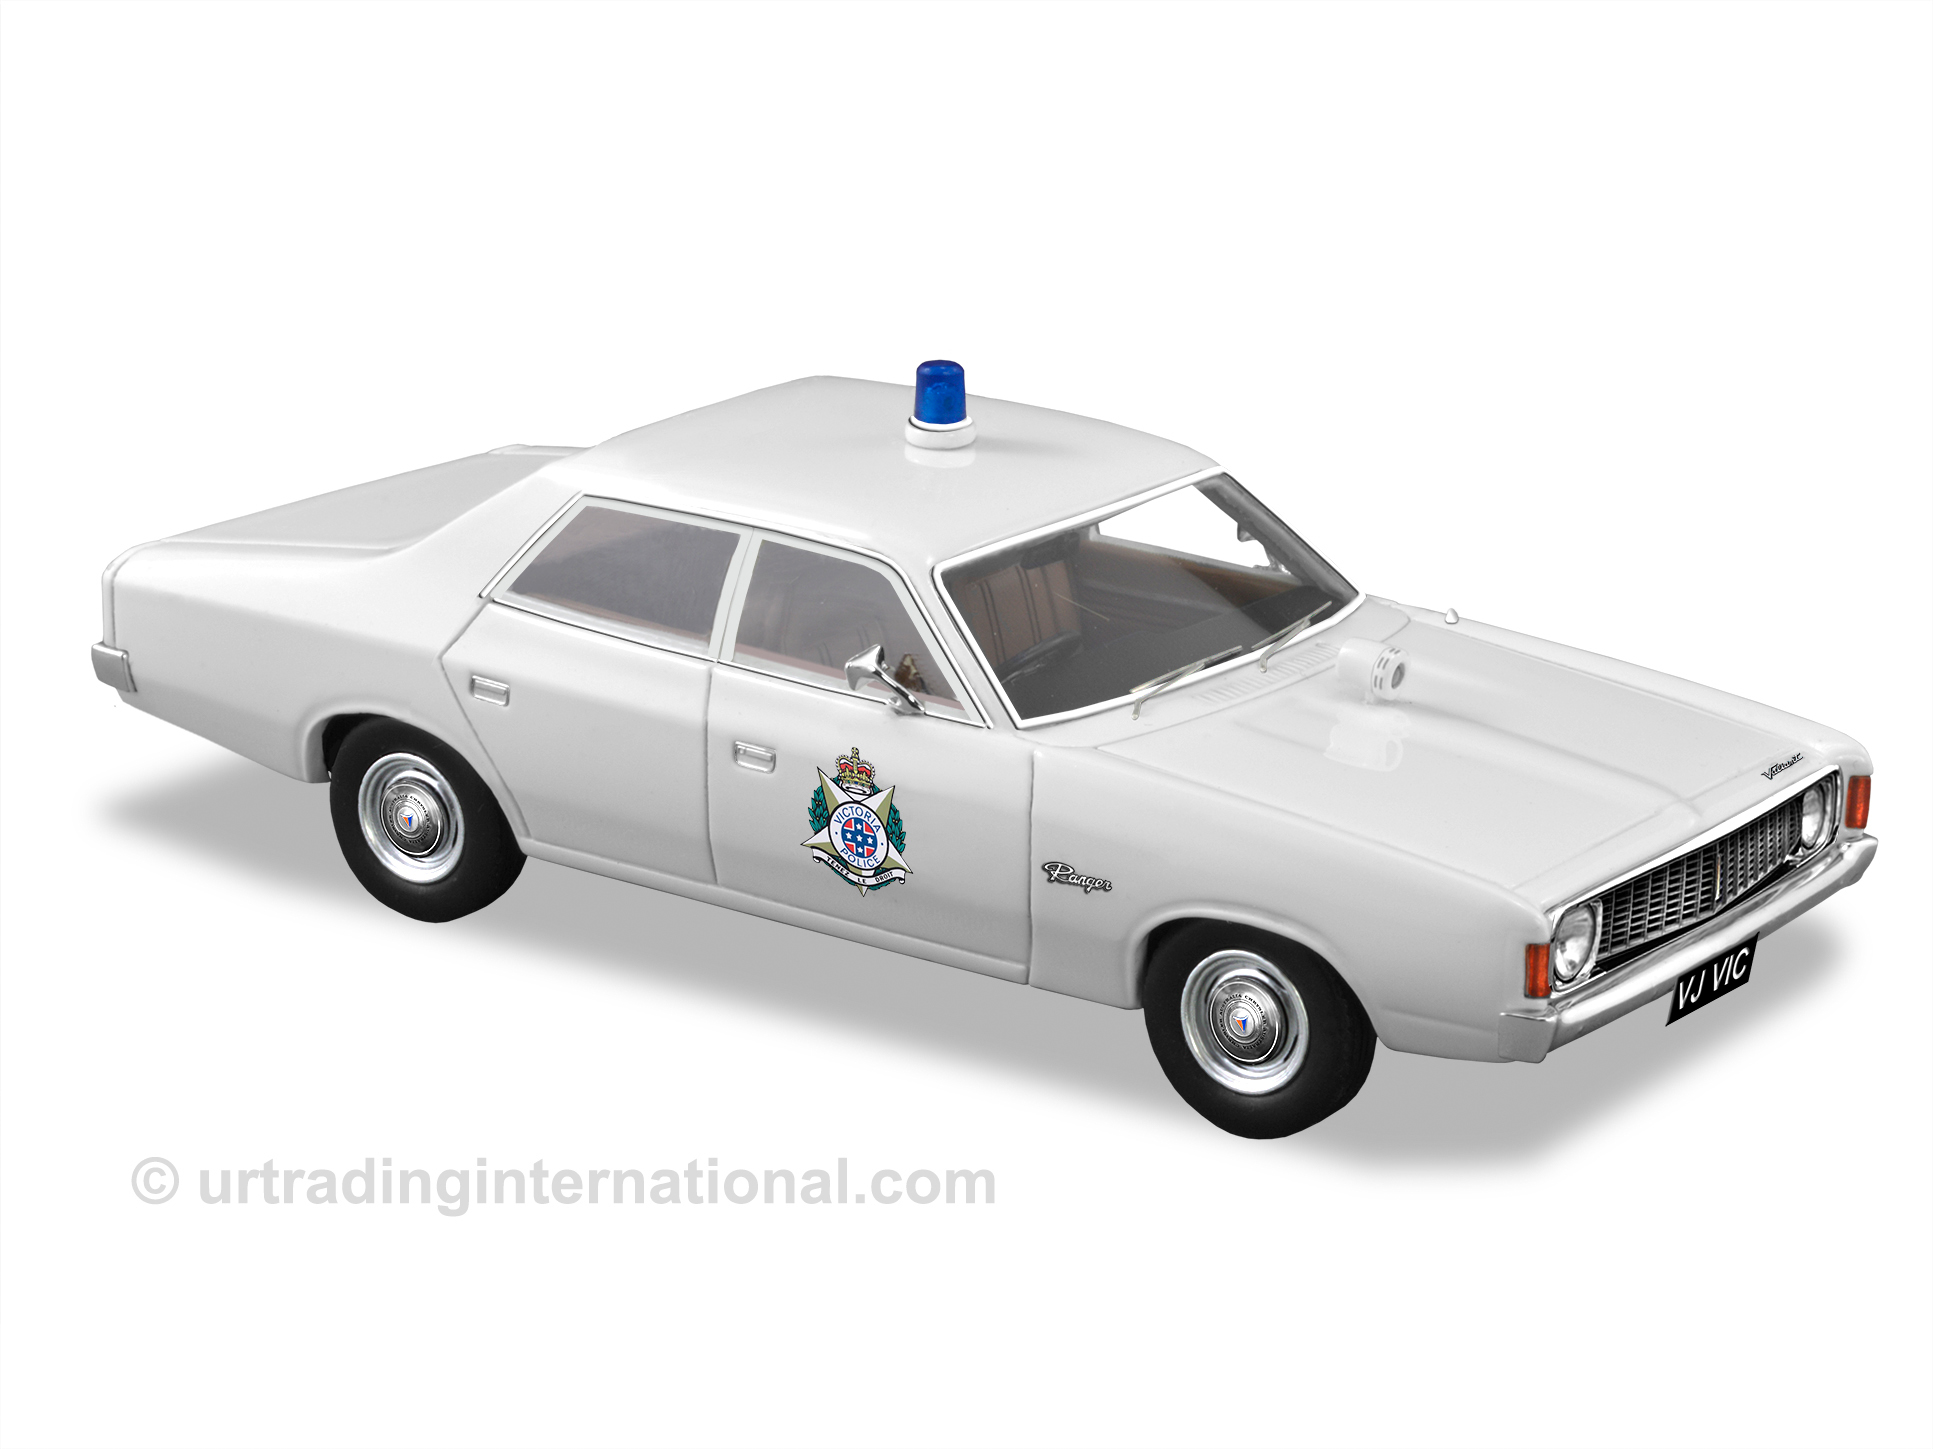 1973 Chrysler VJ Valiant – VIC. Police Car